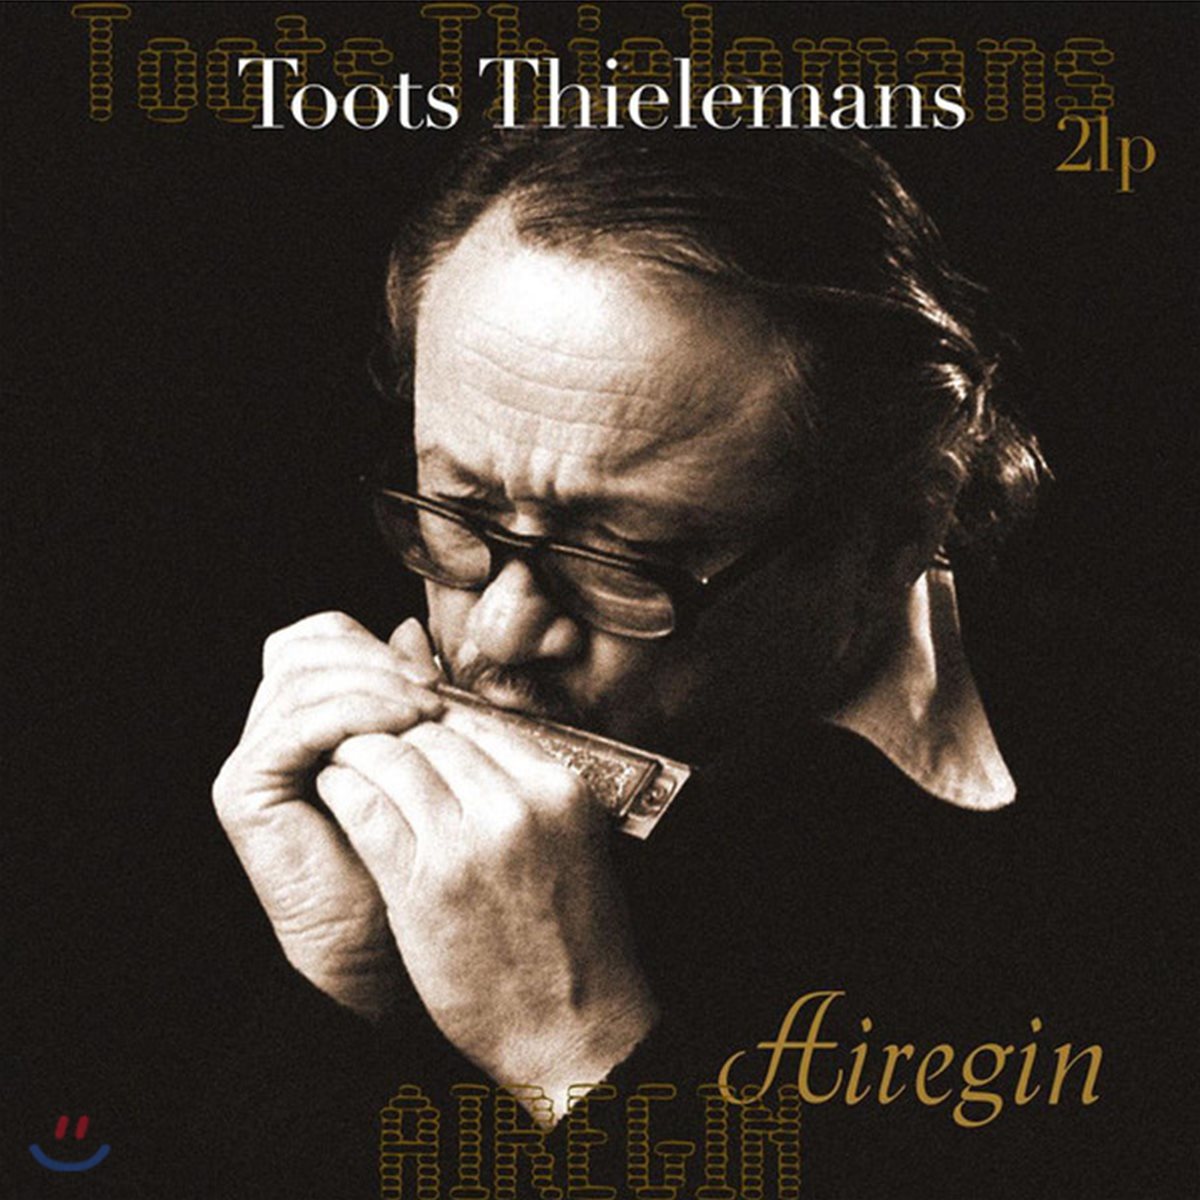 Toots Thielemans (투츠 틸레망스) - Airegin [2 LP]